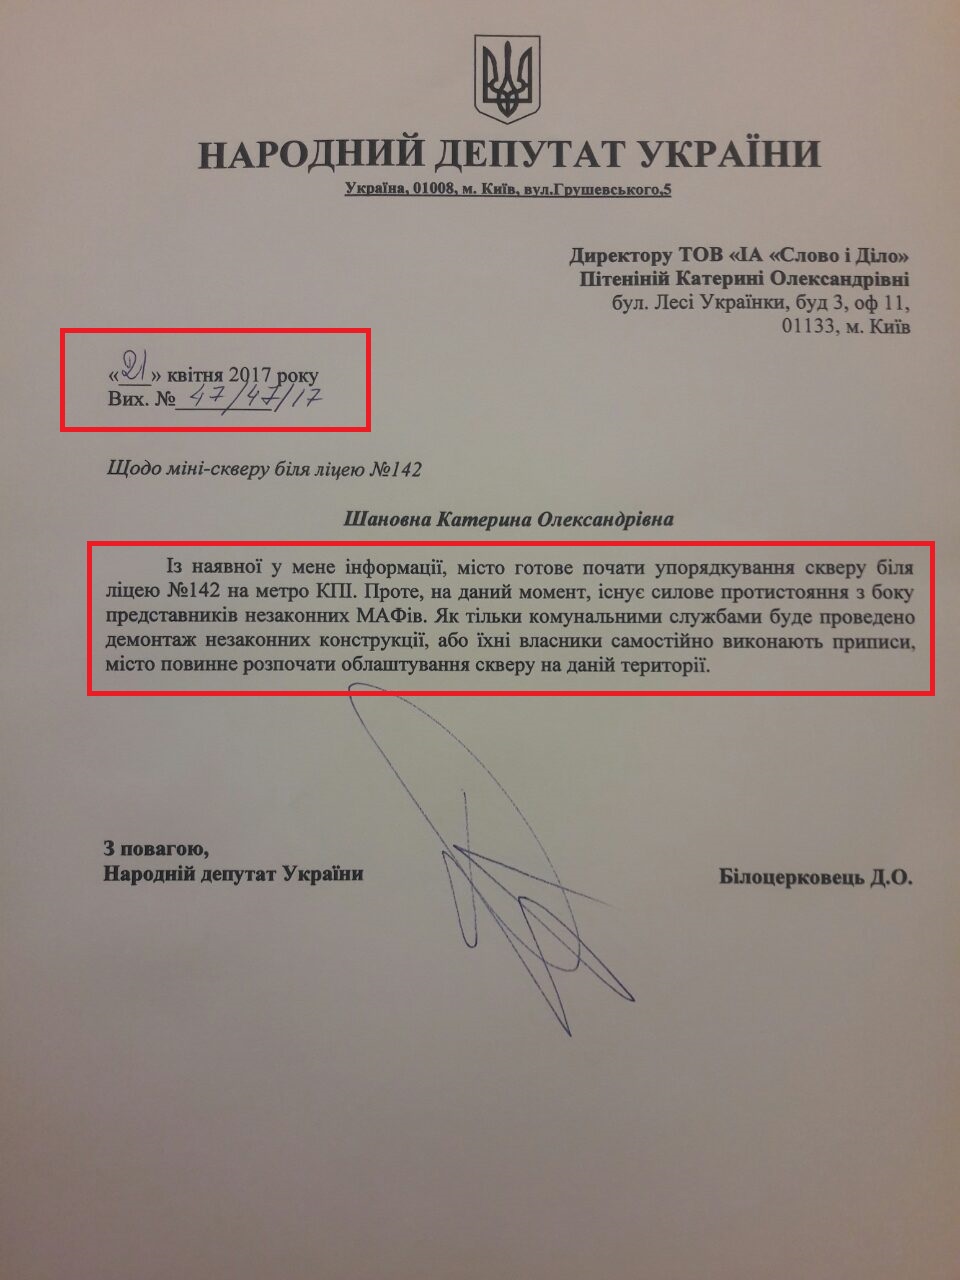 лист народного депутата України Дмитра Білоцерковця №47/47/17 від 21 квітня 2017 року